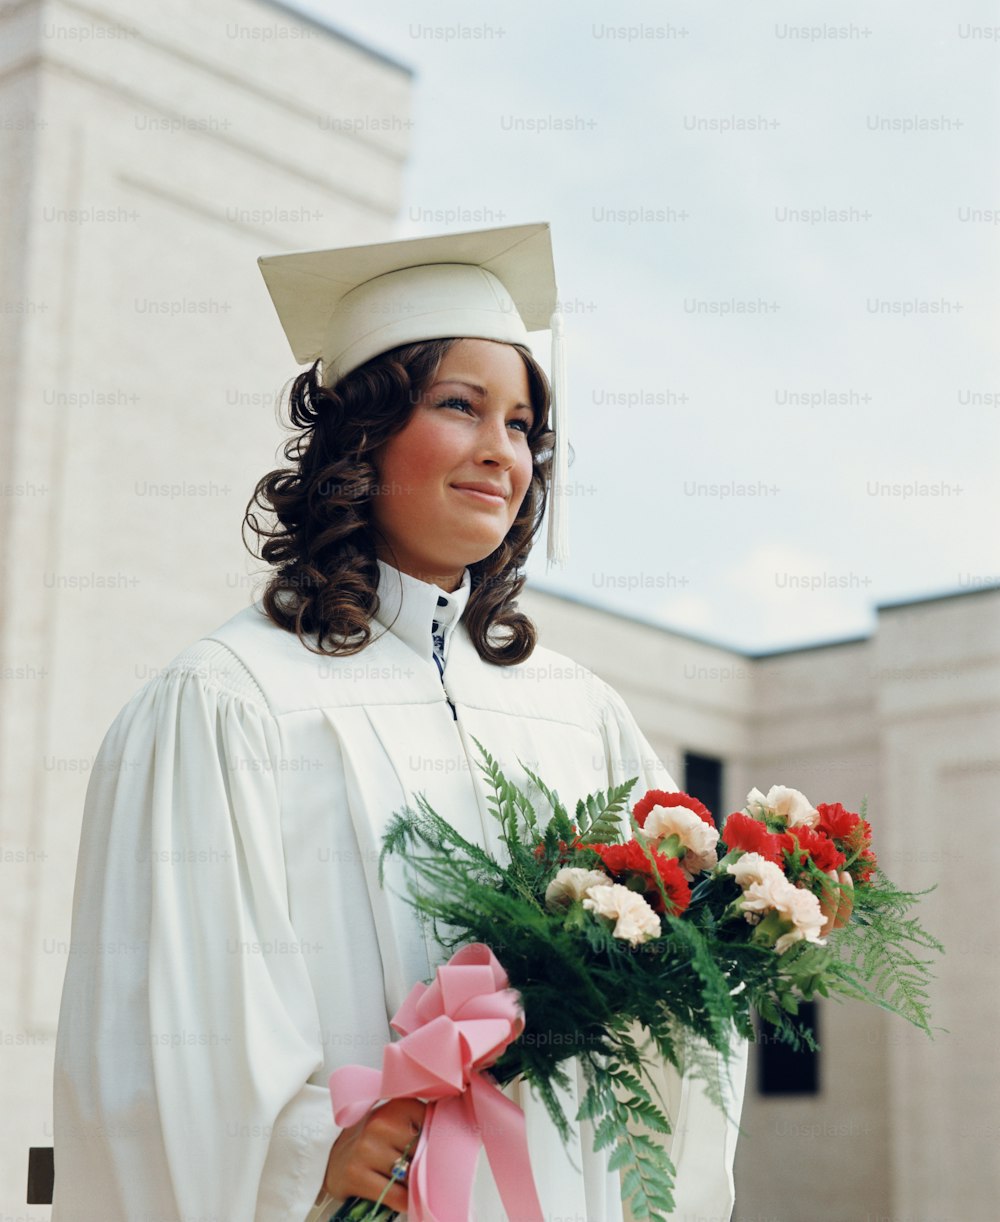 STATI UNITI - CIRCA 1970: Studente adolescente che indossa vesti bianche e mortaio, tenendo un mazzo di fiori alla laurea.